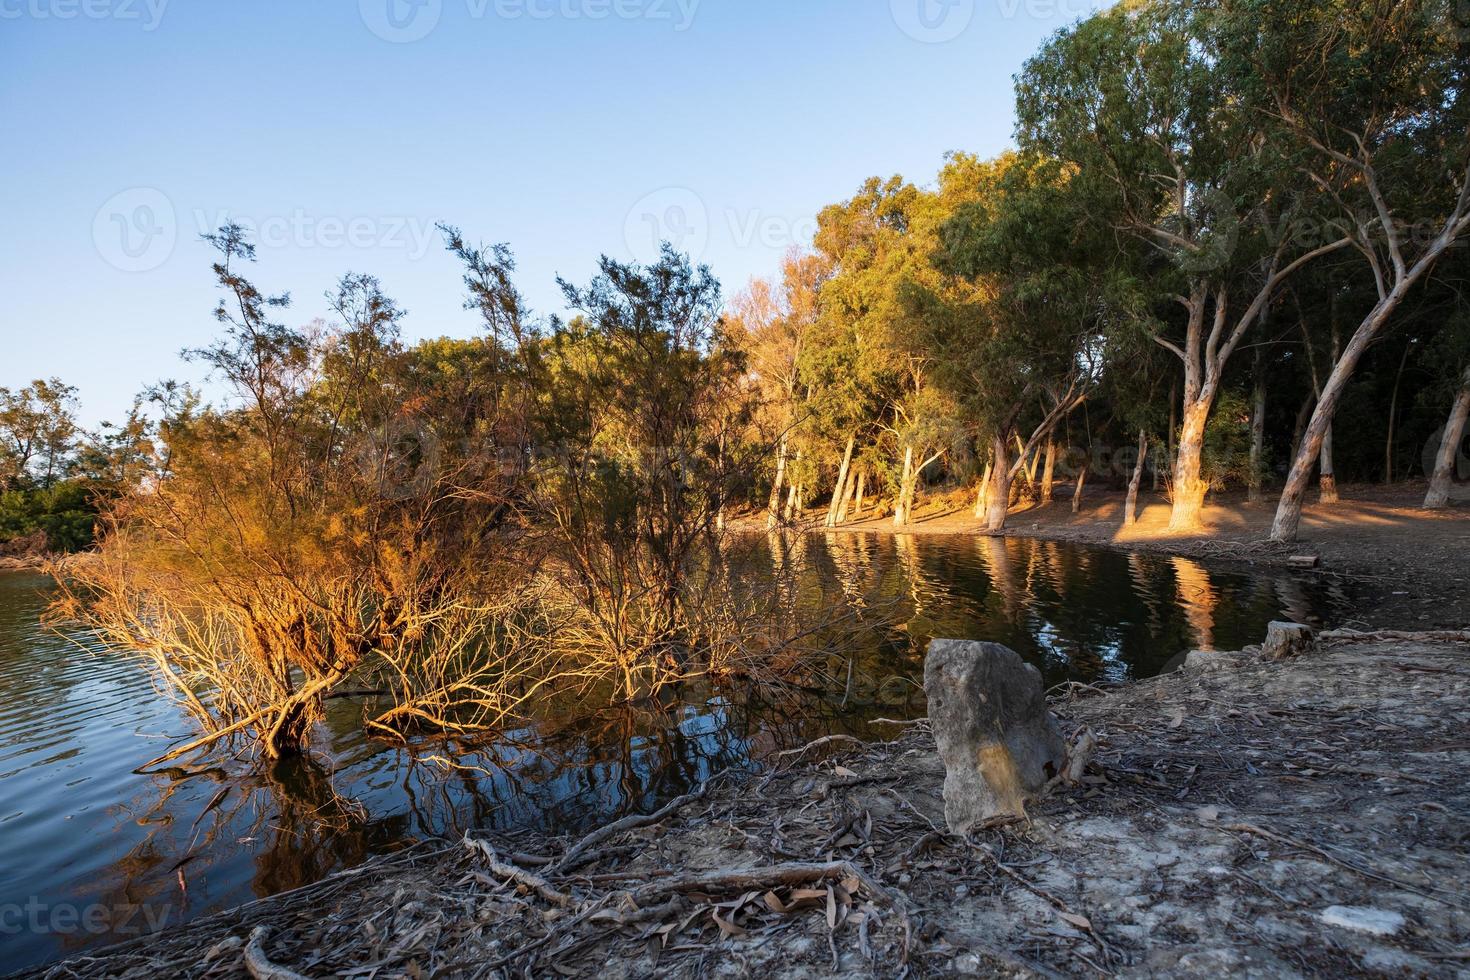 athalassa meer cyprus met prachtig verlicht water en bomen op een mooie zonnige middag foto